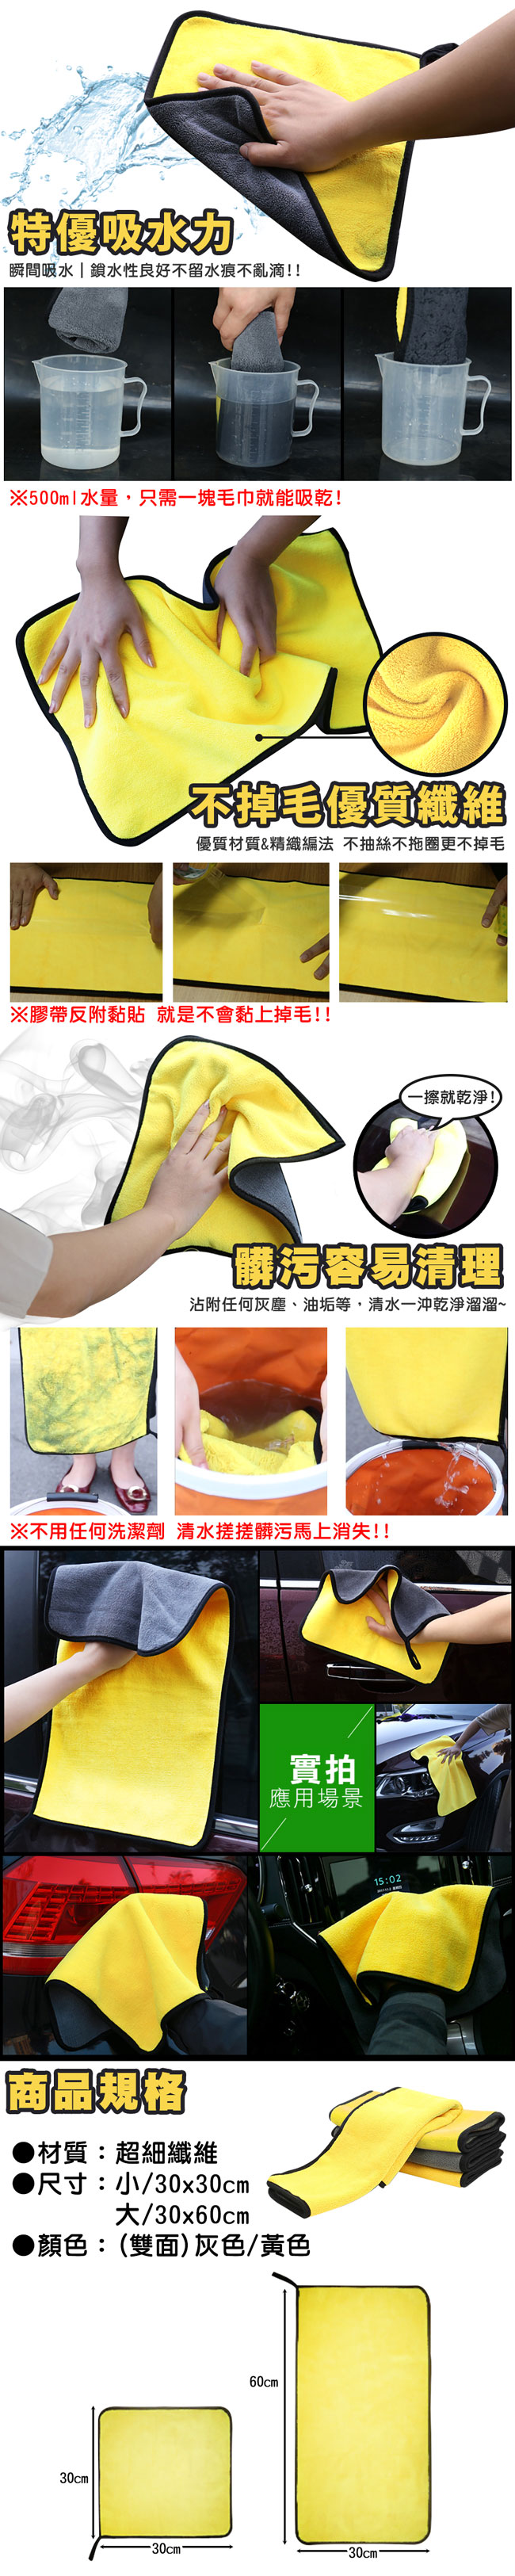 EZlife雙色超柔超吸水洗車巾2入組(30*60cm)